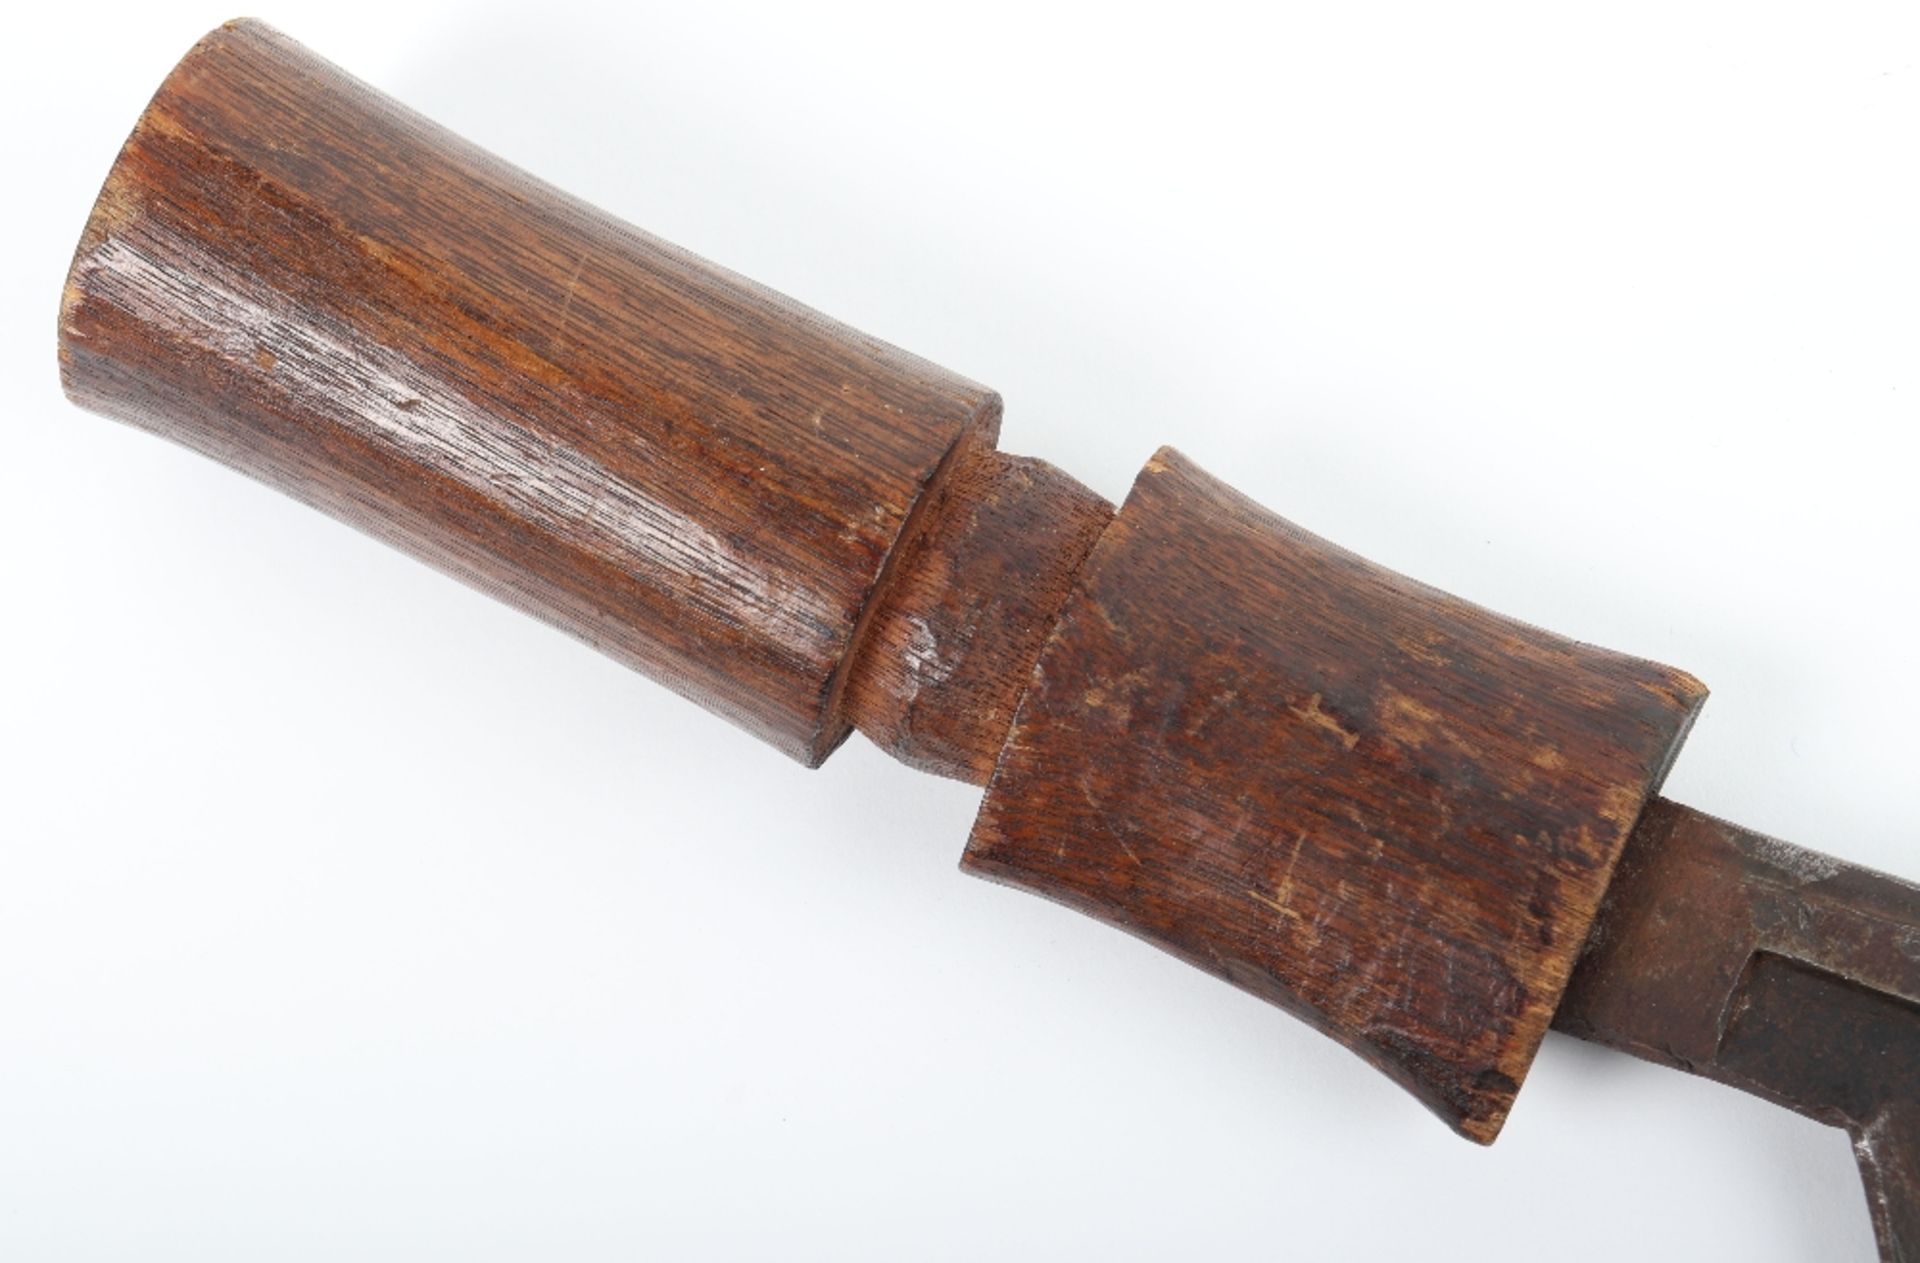 African Mangbetu Sickle Sword - Image 5 of 10